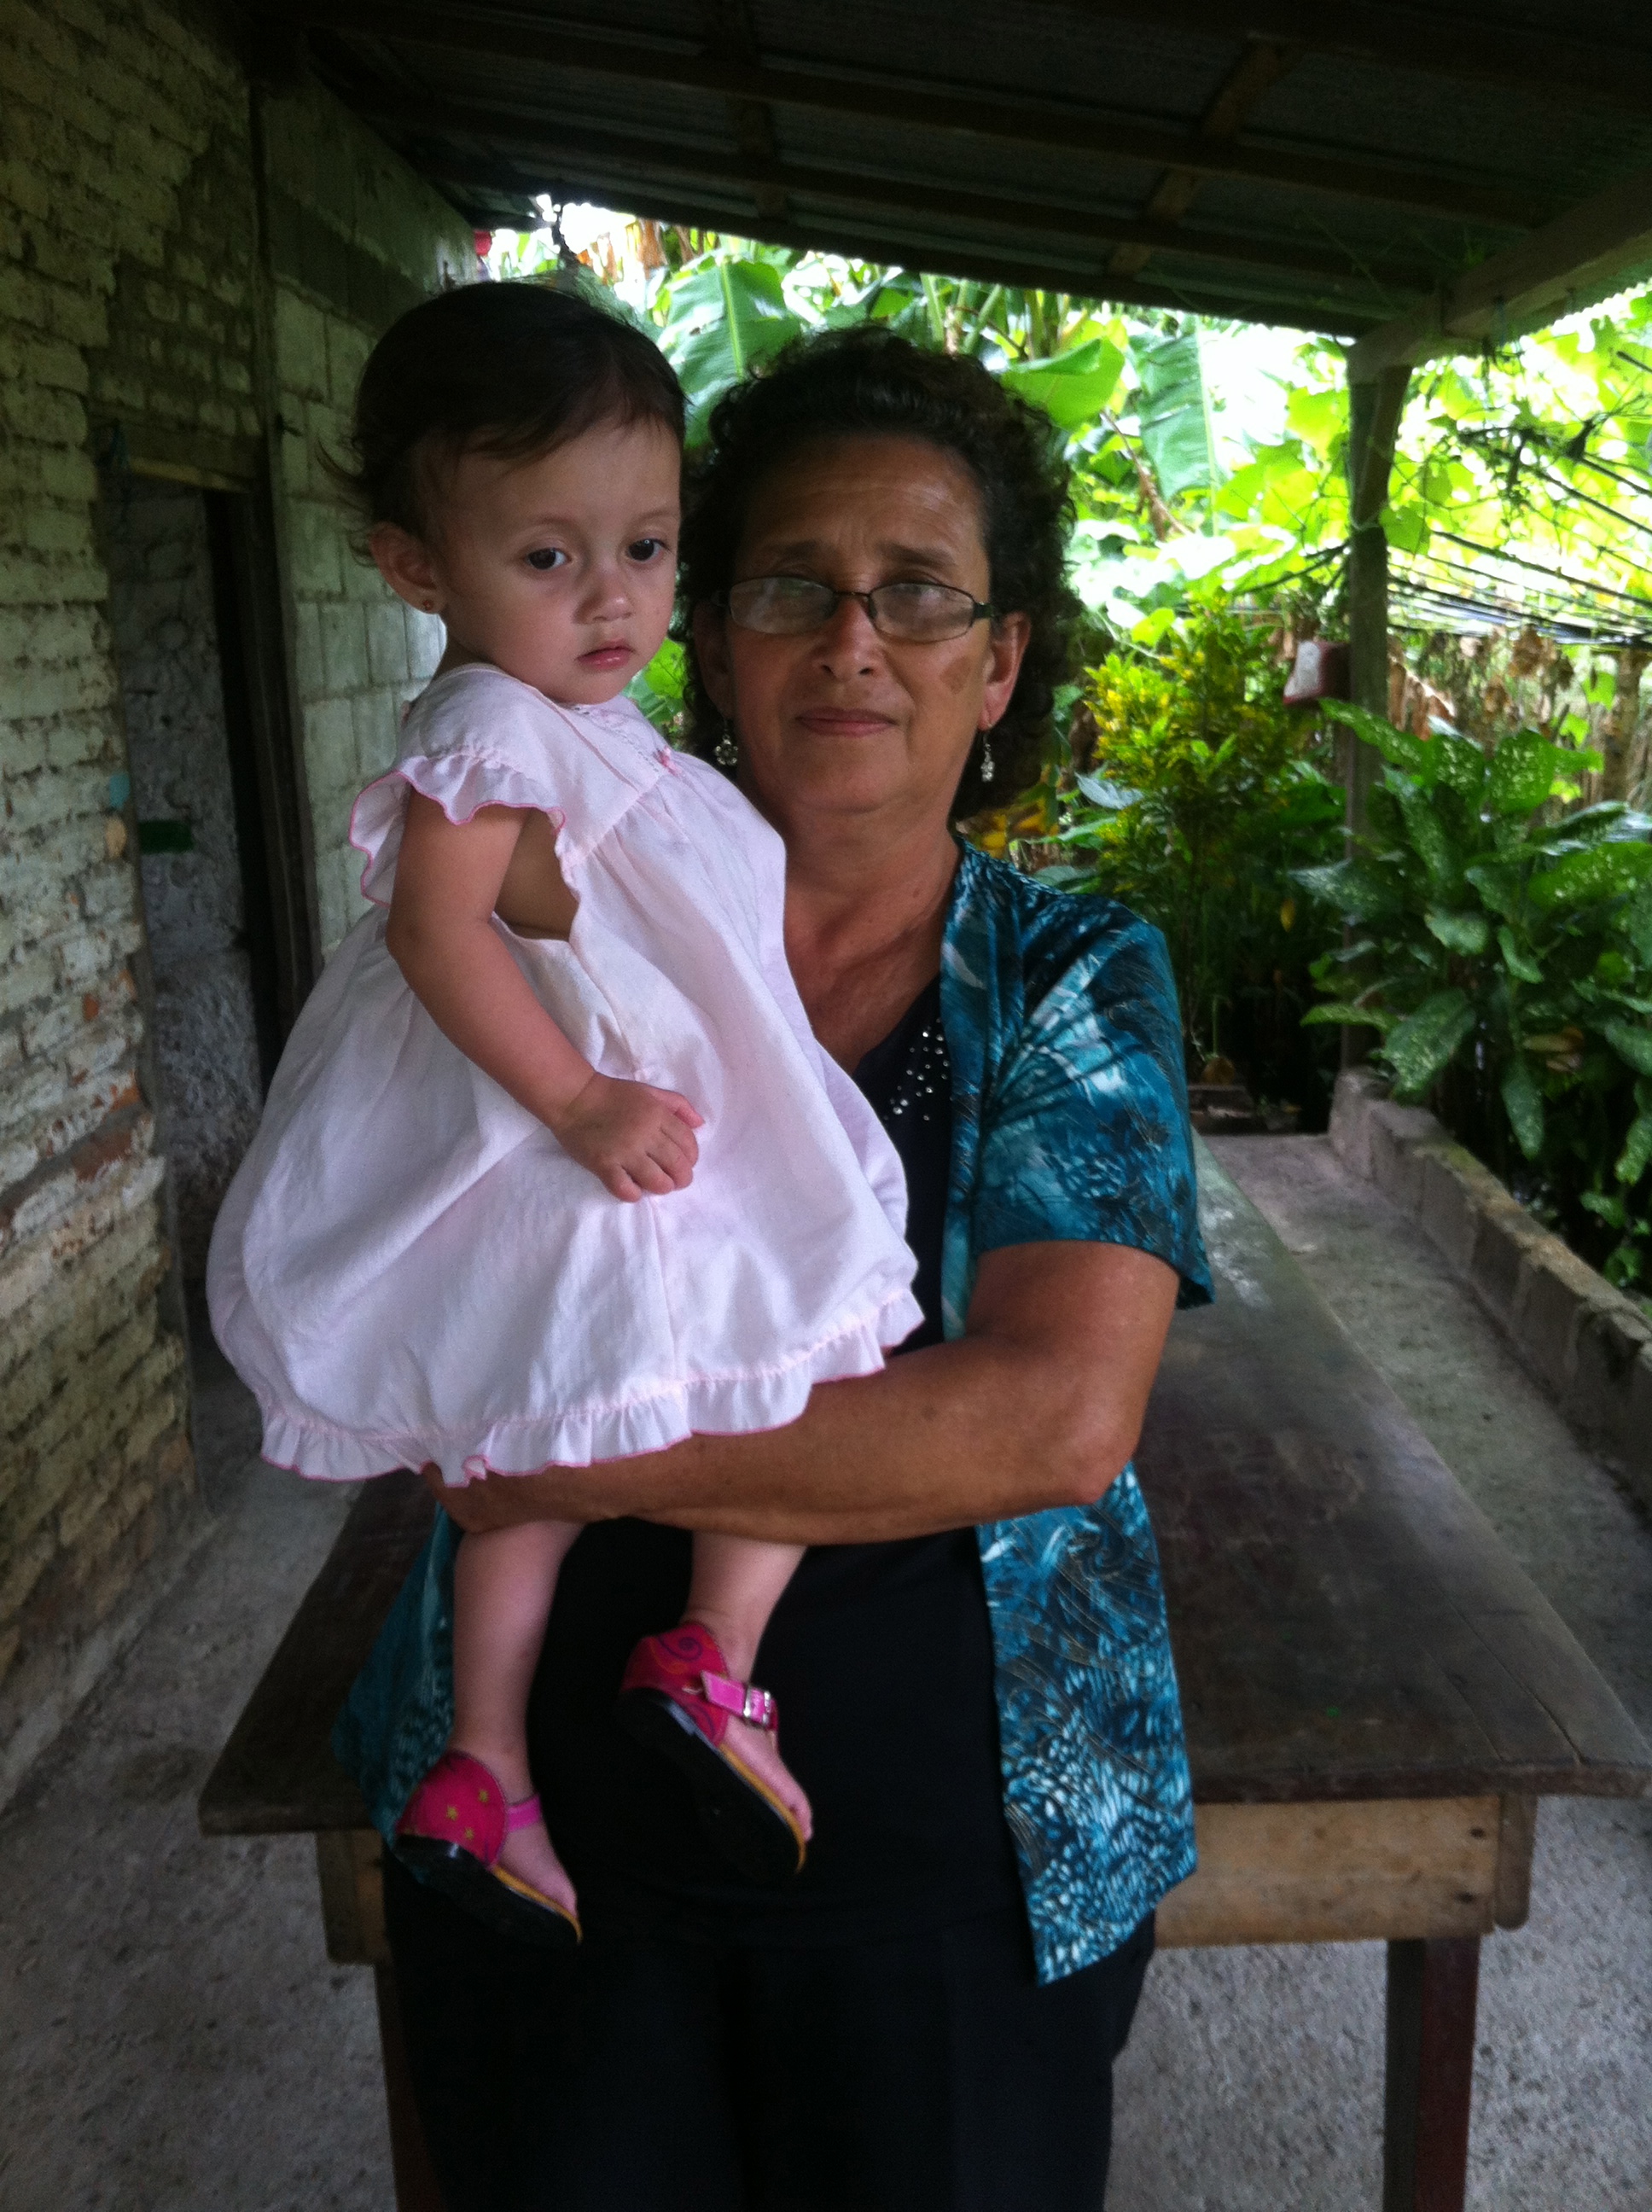 Meet Trinidad, a community member from El Limón, Nicaragua!